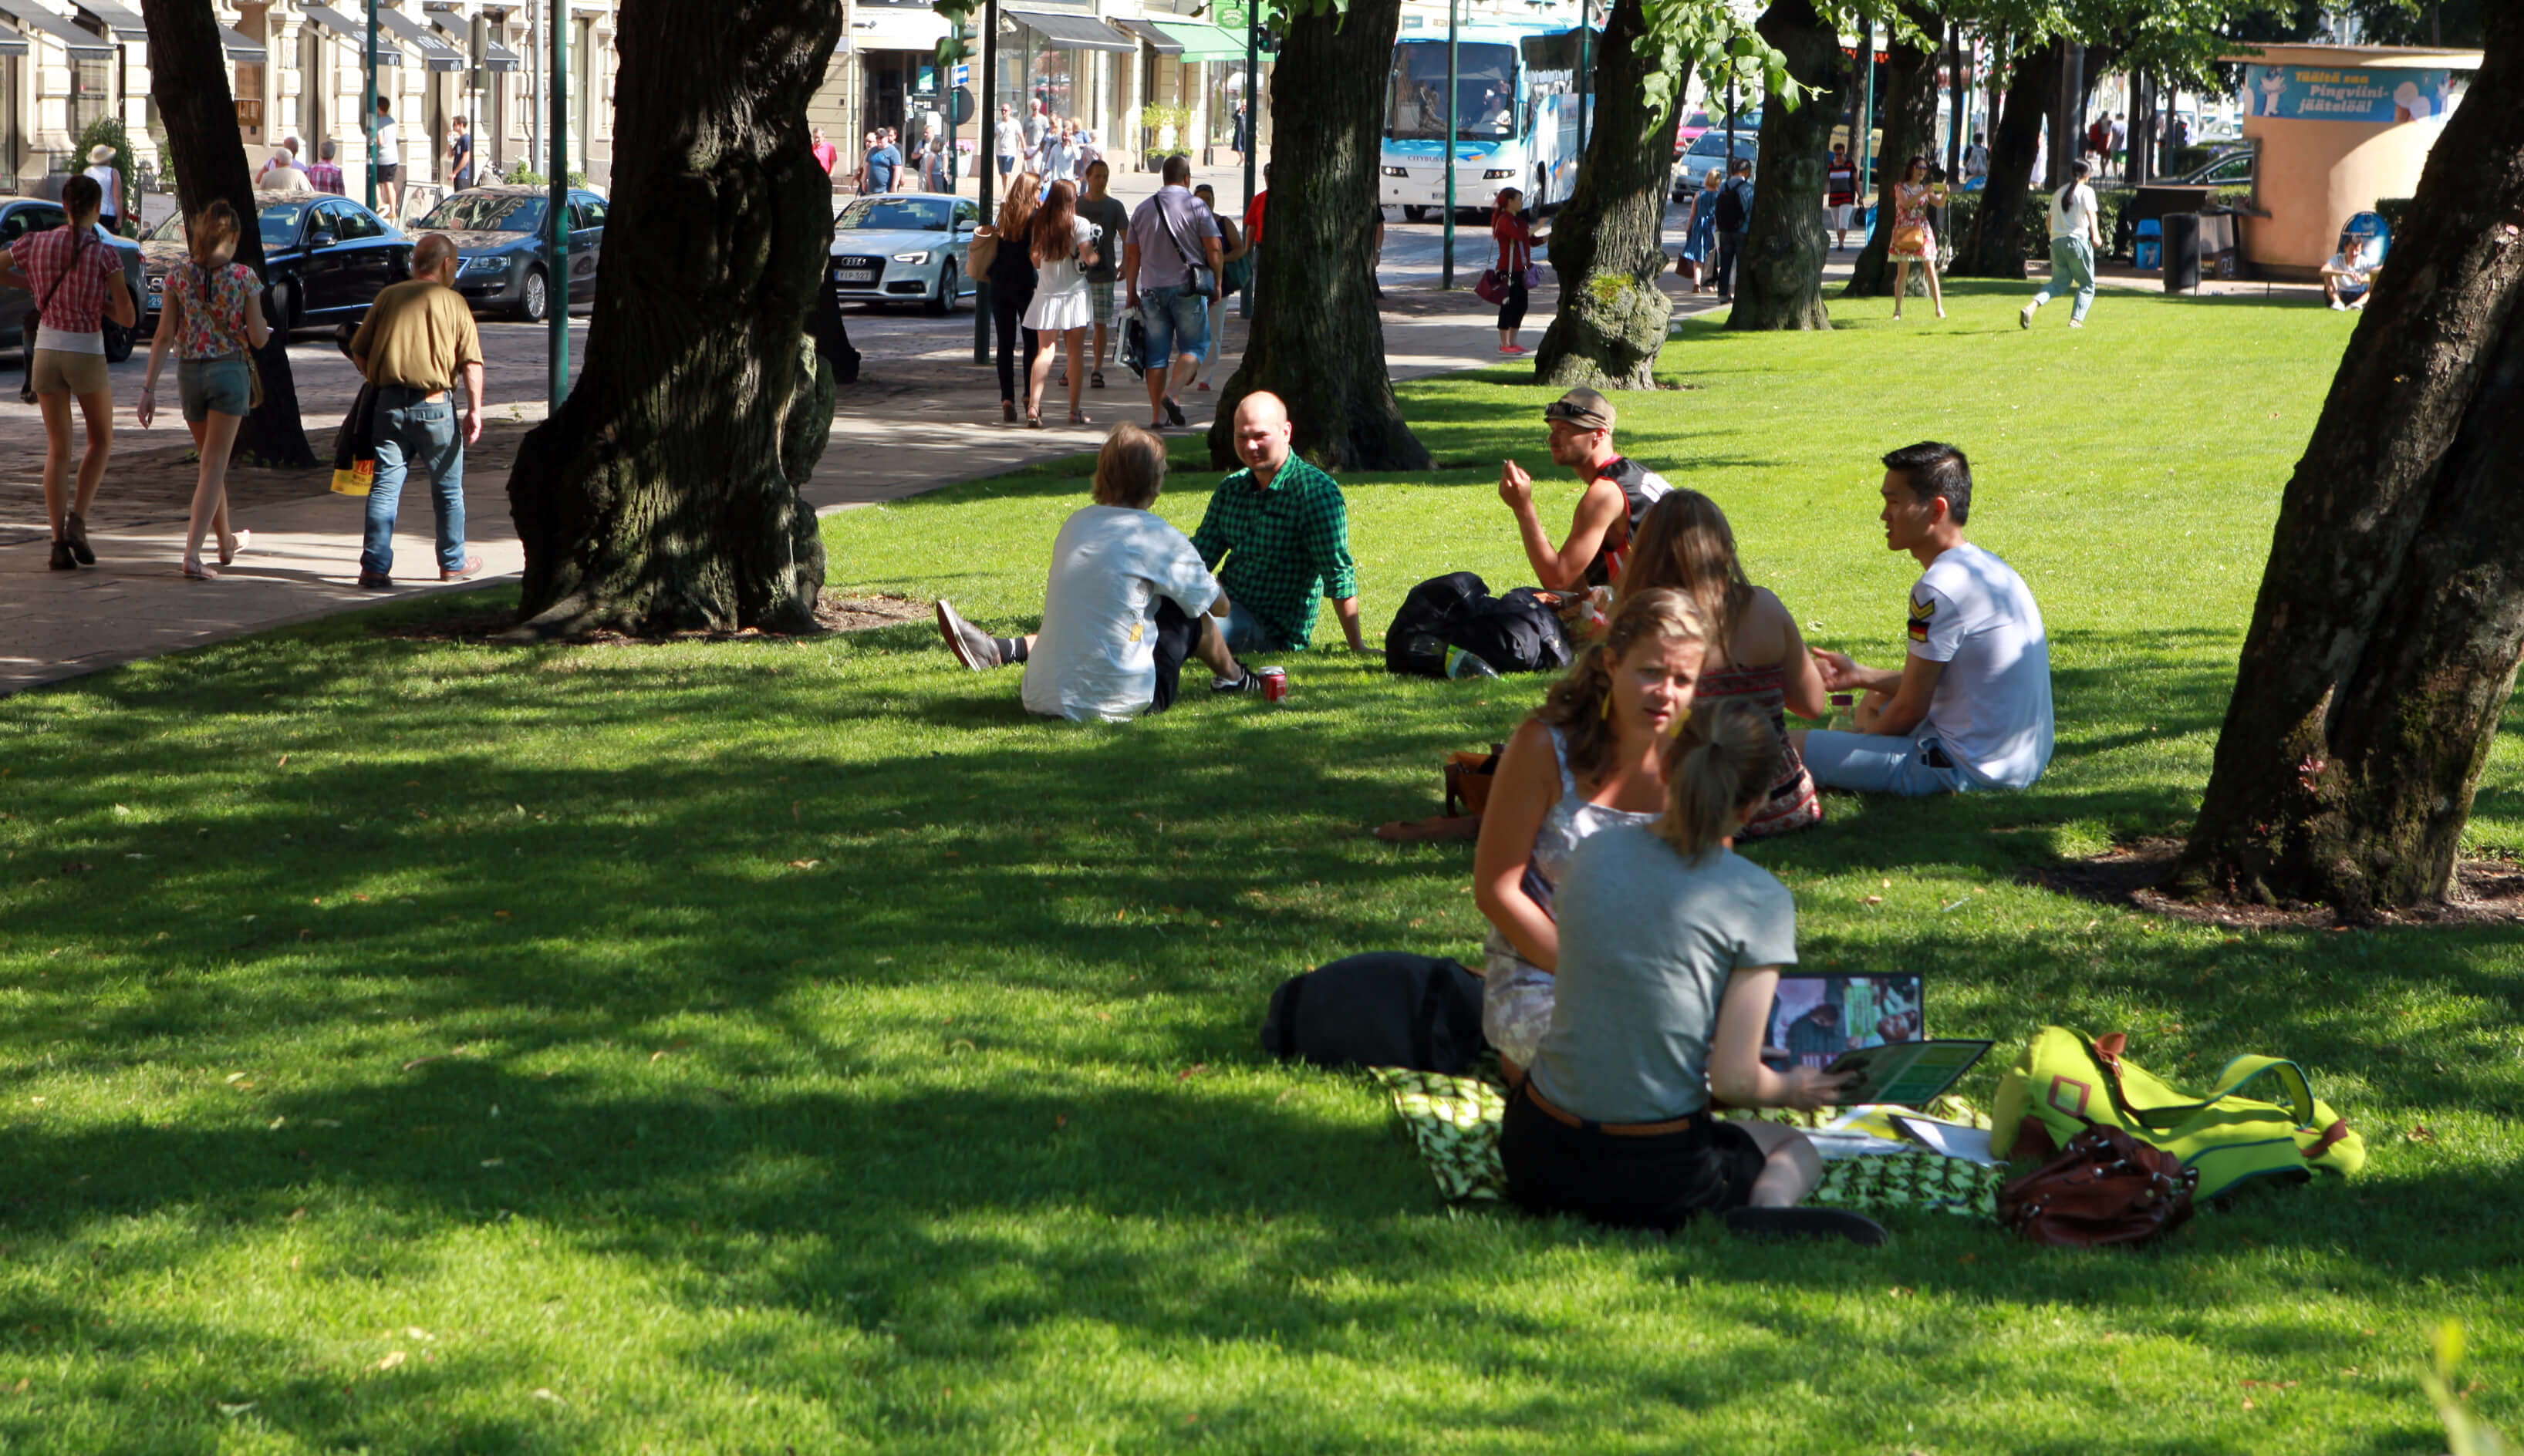 Ihmisiä istuu kaupunkipuistossa kesällä nurmikolla keskustelemassa